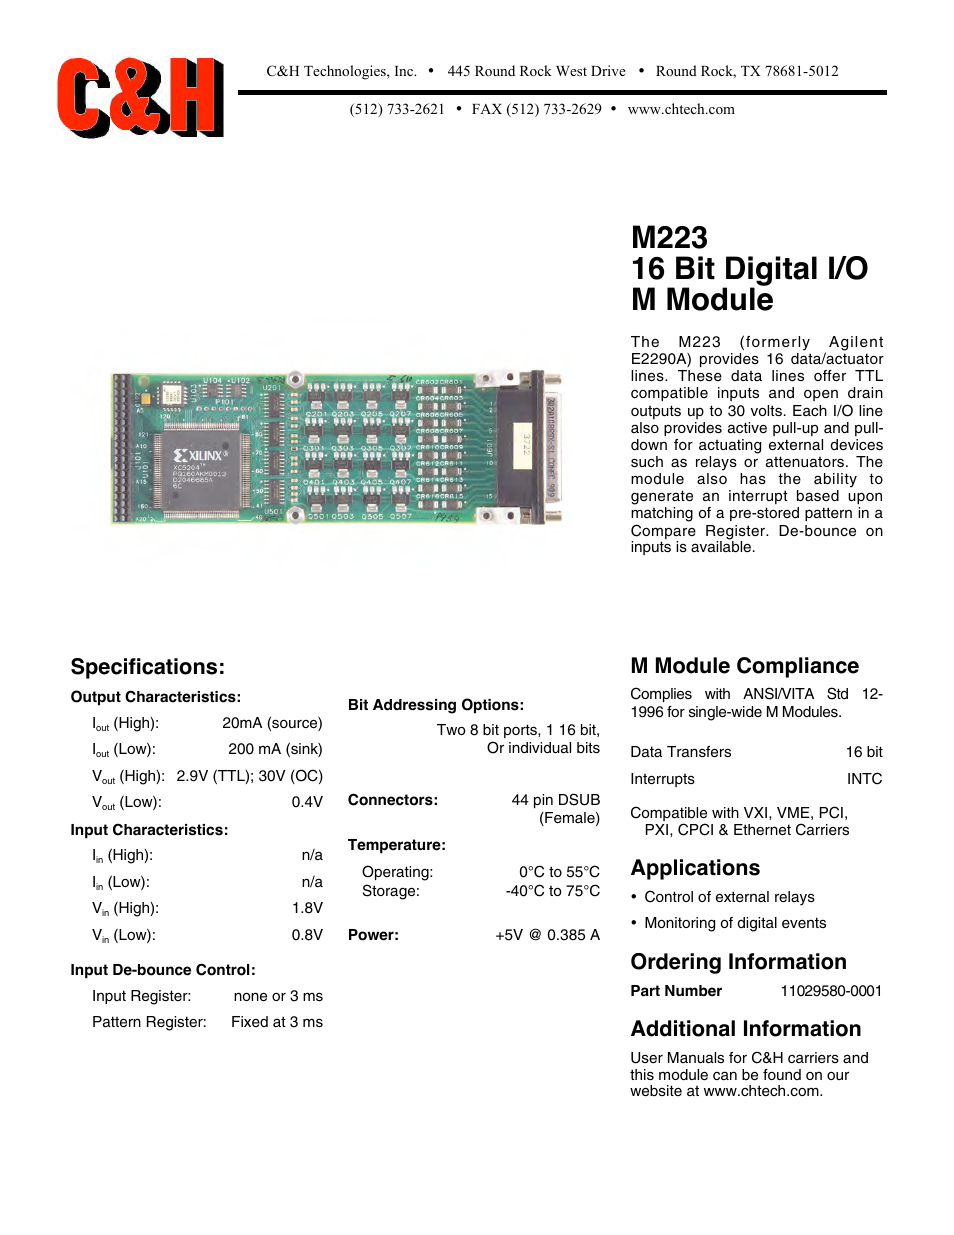 16 Bit Digital I/O M Module M223